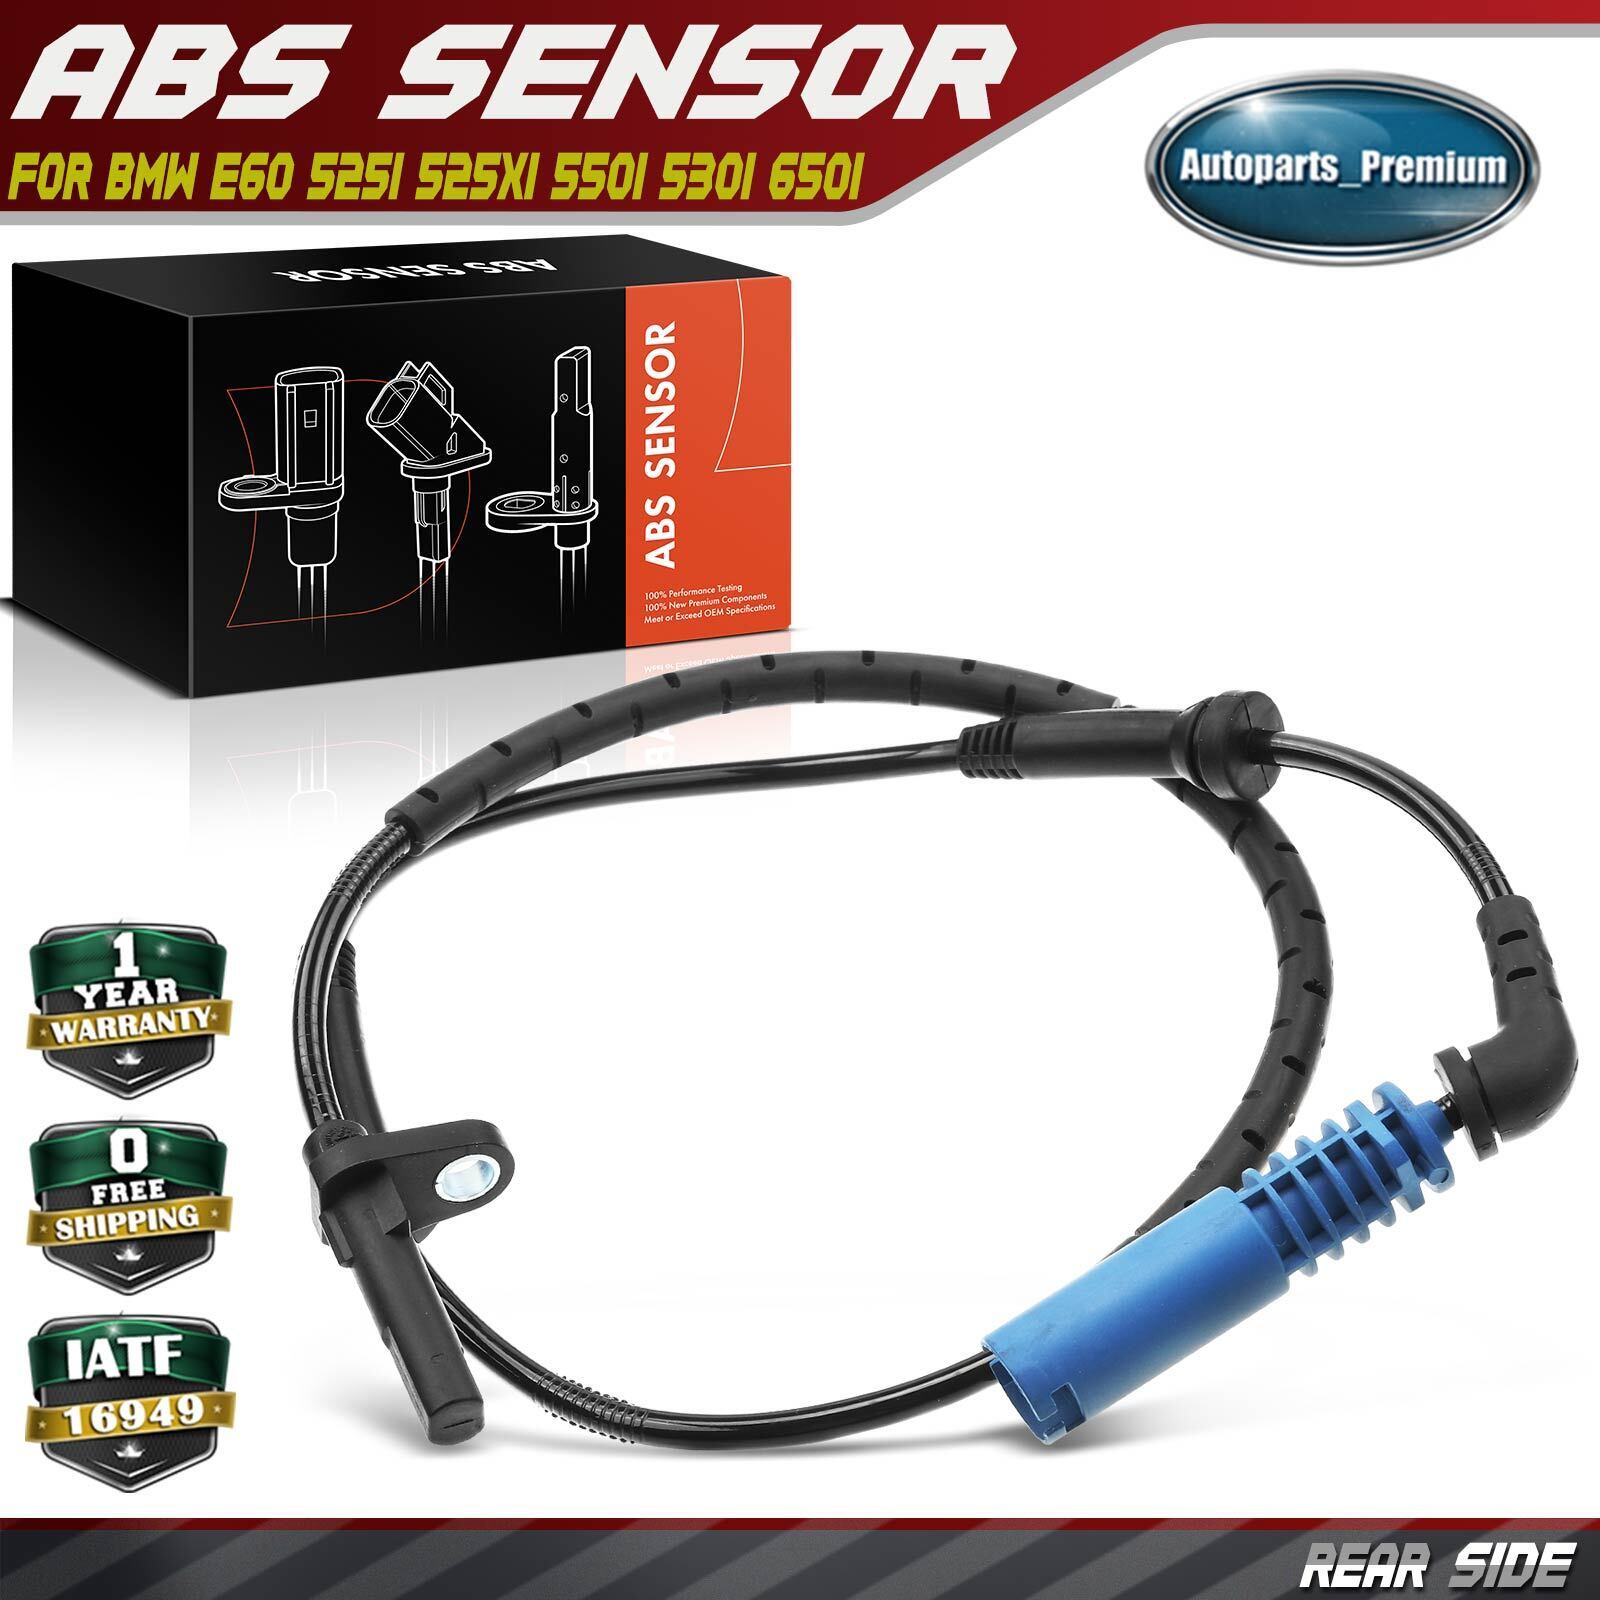 ABS Wheel Speed Sensor for BMW E60 E63 525i 525xi 528i 530i 545i 550i 650i Rear